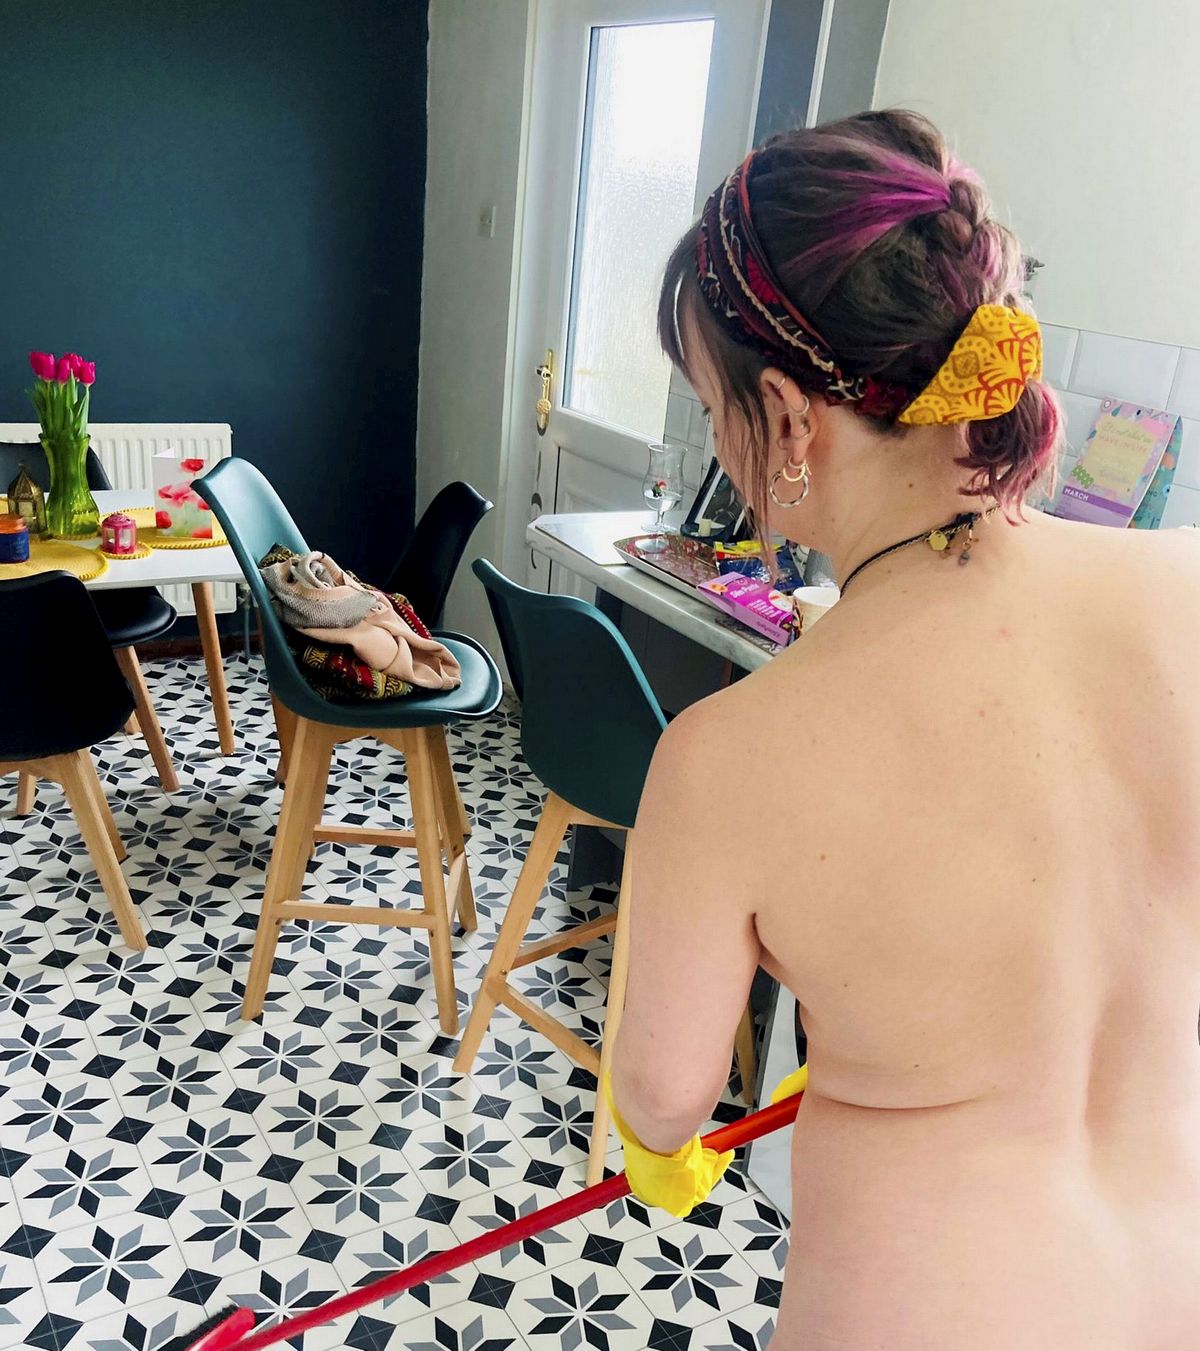 Une femme de ménage nue qui facture 60 € lheure parle des clients « bizarres » quelle rencontre photo